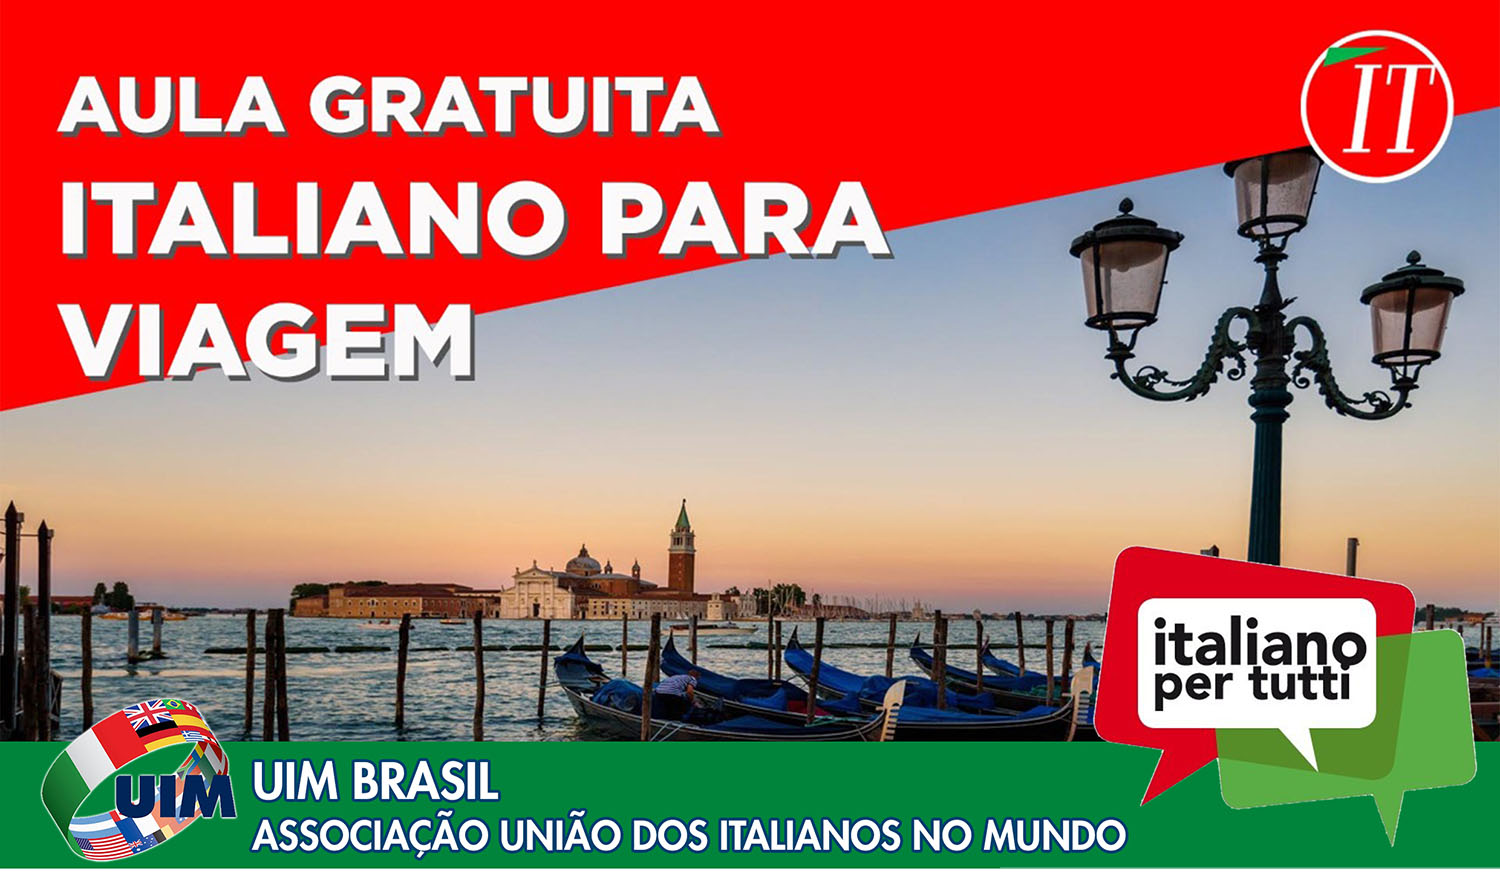 Aula de Italiano para Viagem - UIM Brasil Associação União dos Italianos no Mundo